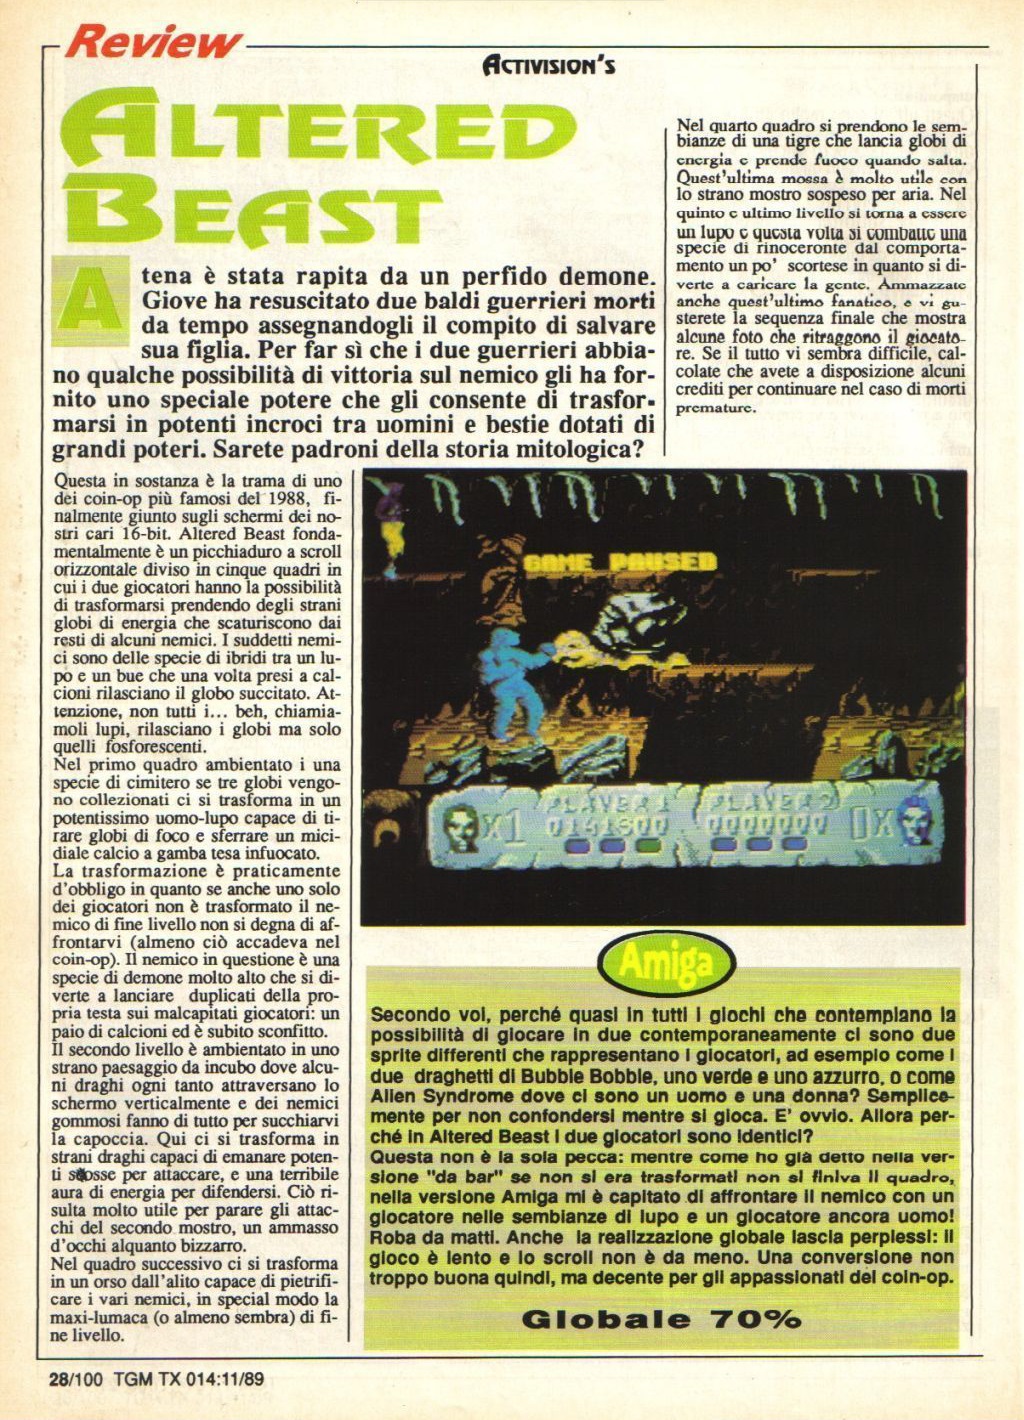 the_games_machine_14_nov_1989_-_pag.28.jpg